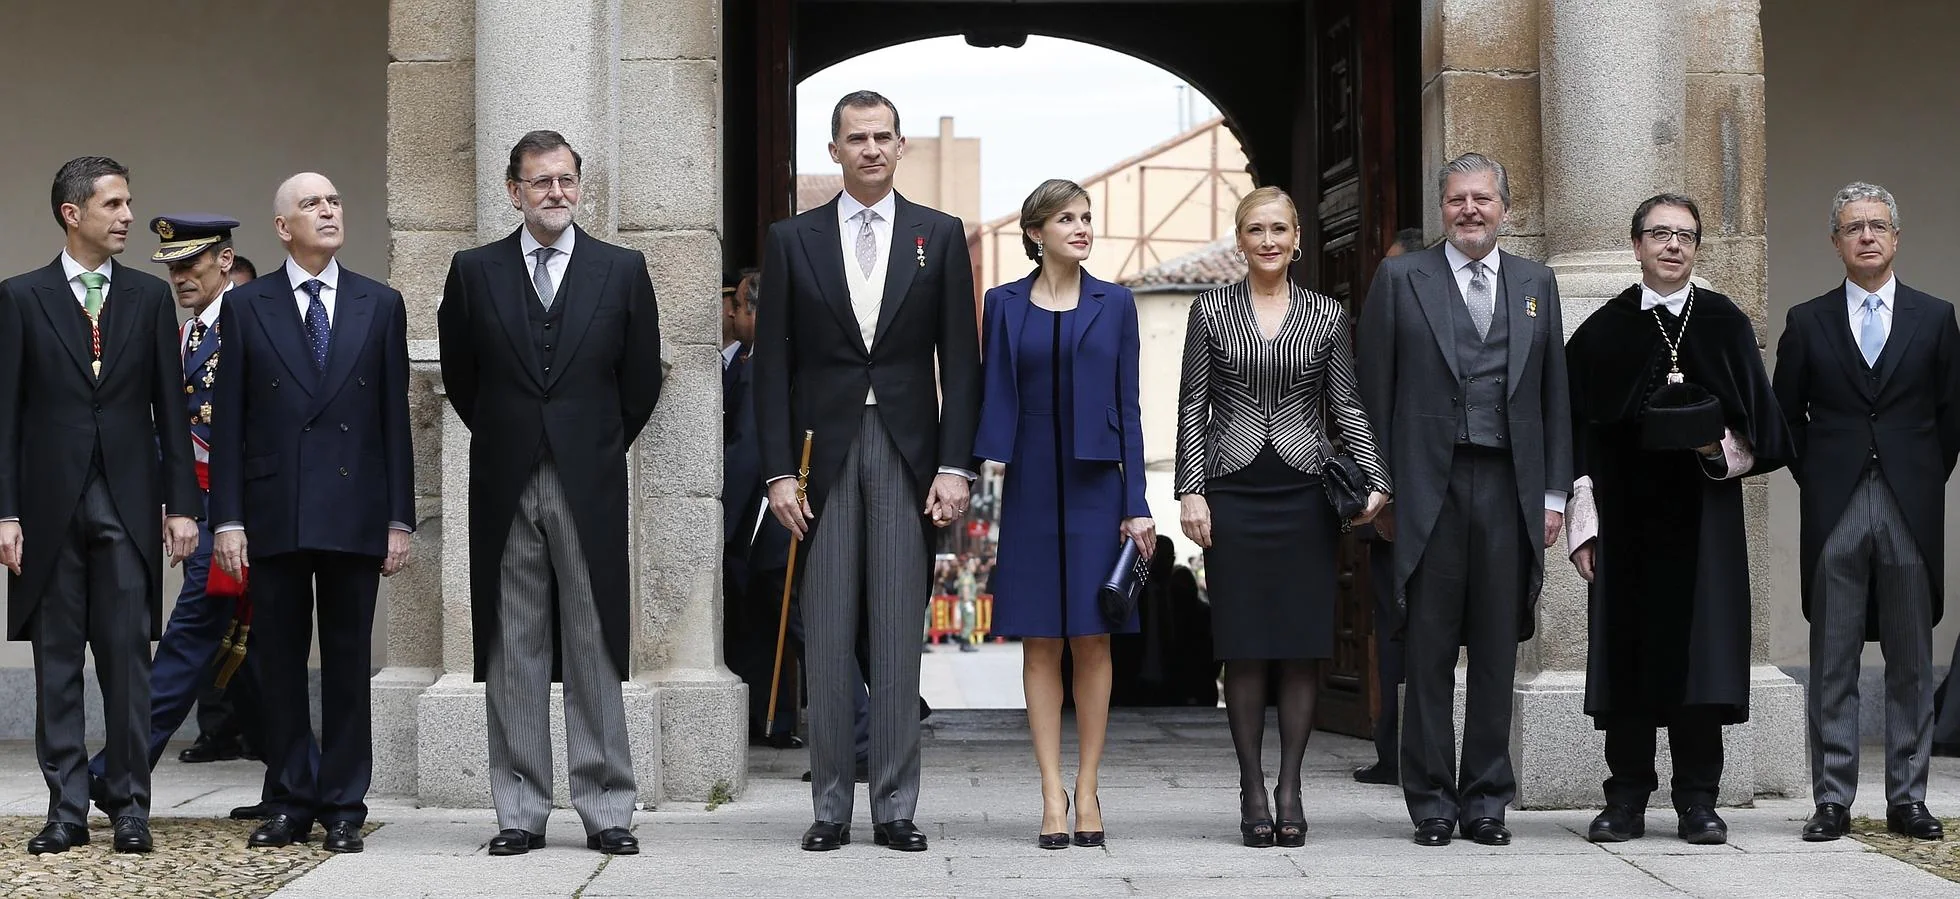 El Rey Felipe, la Reina Letizia, el presidente del Gobierno en funciones, Mariano Rajoy, y la presidenta de la Comunidad de Madrid, Cristina Cifuentes, antes del inicio de la ceremonia de entrega del Premio Cervantes